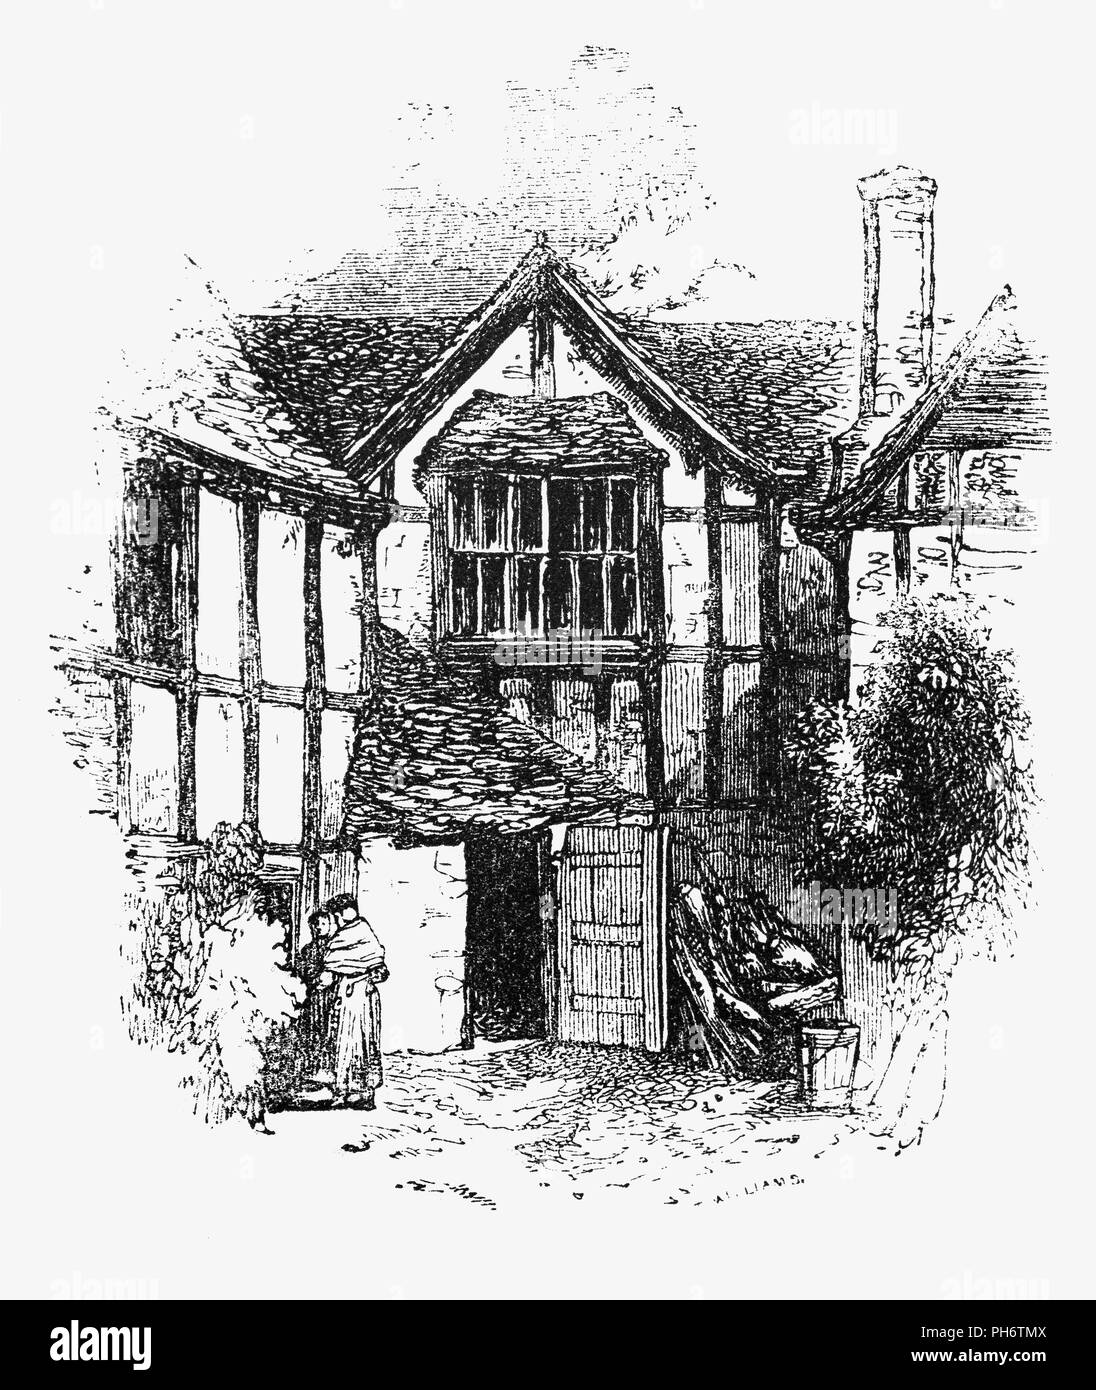 Une cour Tudor house à Evesham, une ville de marché dans le Worcestershire, Angleterre dans une typique maison Tudor le poids de la maison a été réalisée sur un châssis en bois. L'espace entre les poutres en bois a été complété soit avec la brique ou le plâtre. Pierre a été coûteuse pour plâtre a été utilisé comme le remplissage entre les poutres dans les petites maisons. Le plâtre a été blanchi à la chaux, donnant leurs maisons noir et blanc de l'apparence. Banque D'Images